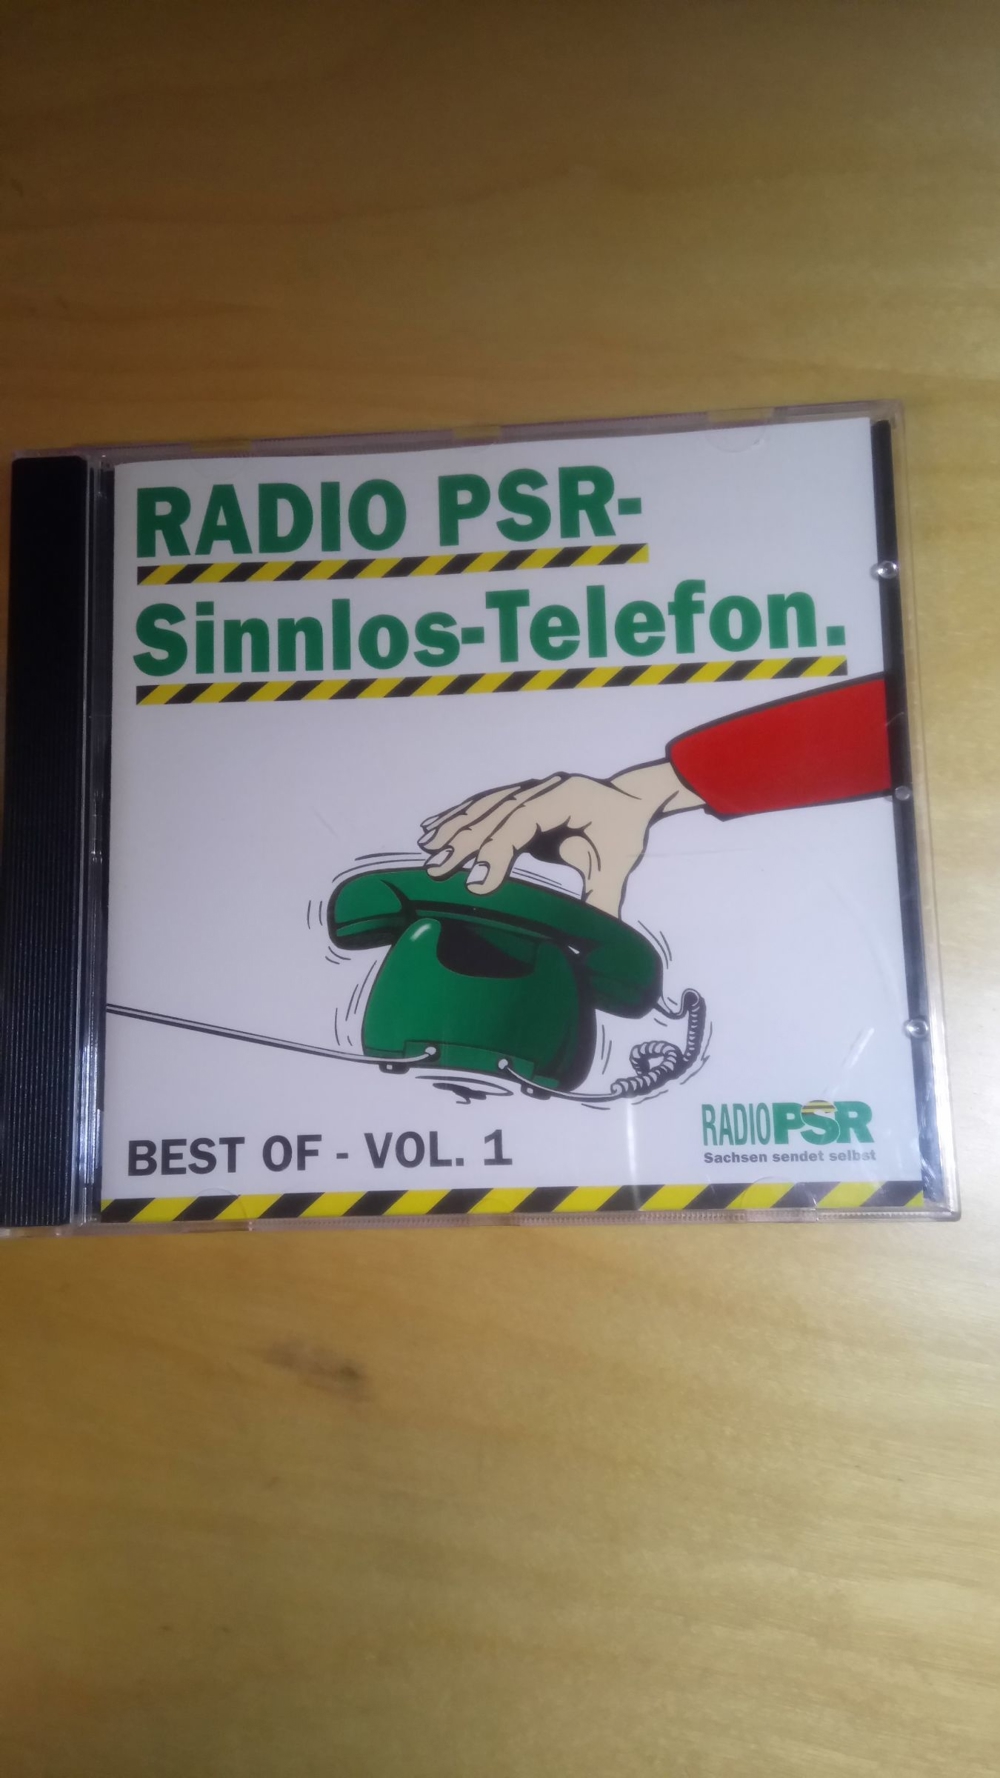 Radio PSR-Sinnlos-Telefon (Best of - Vol.1)